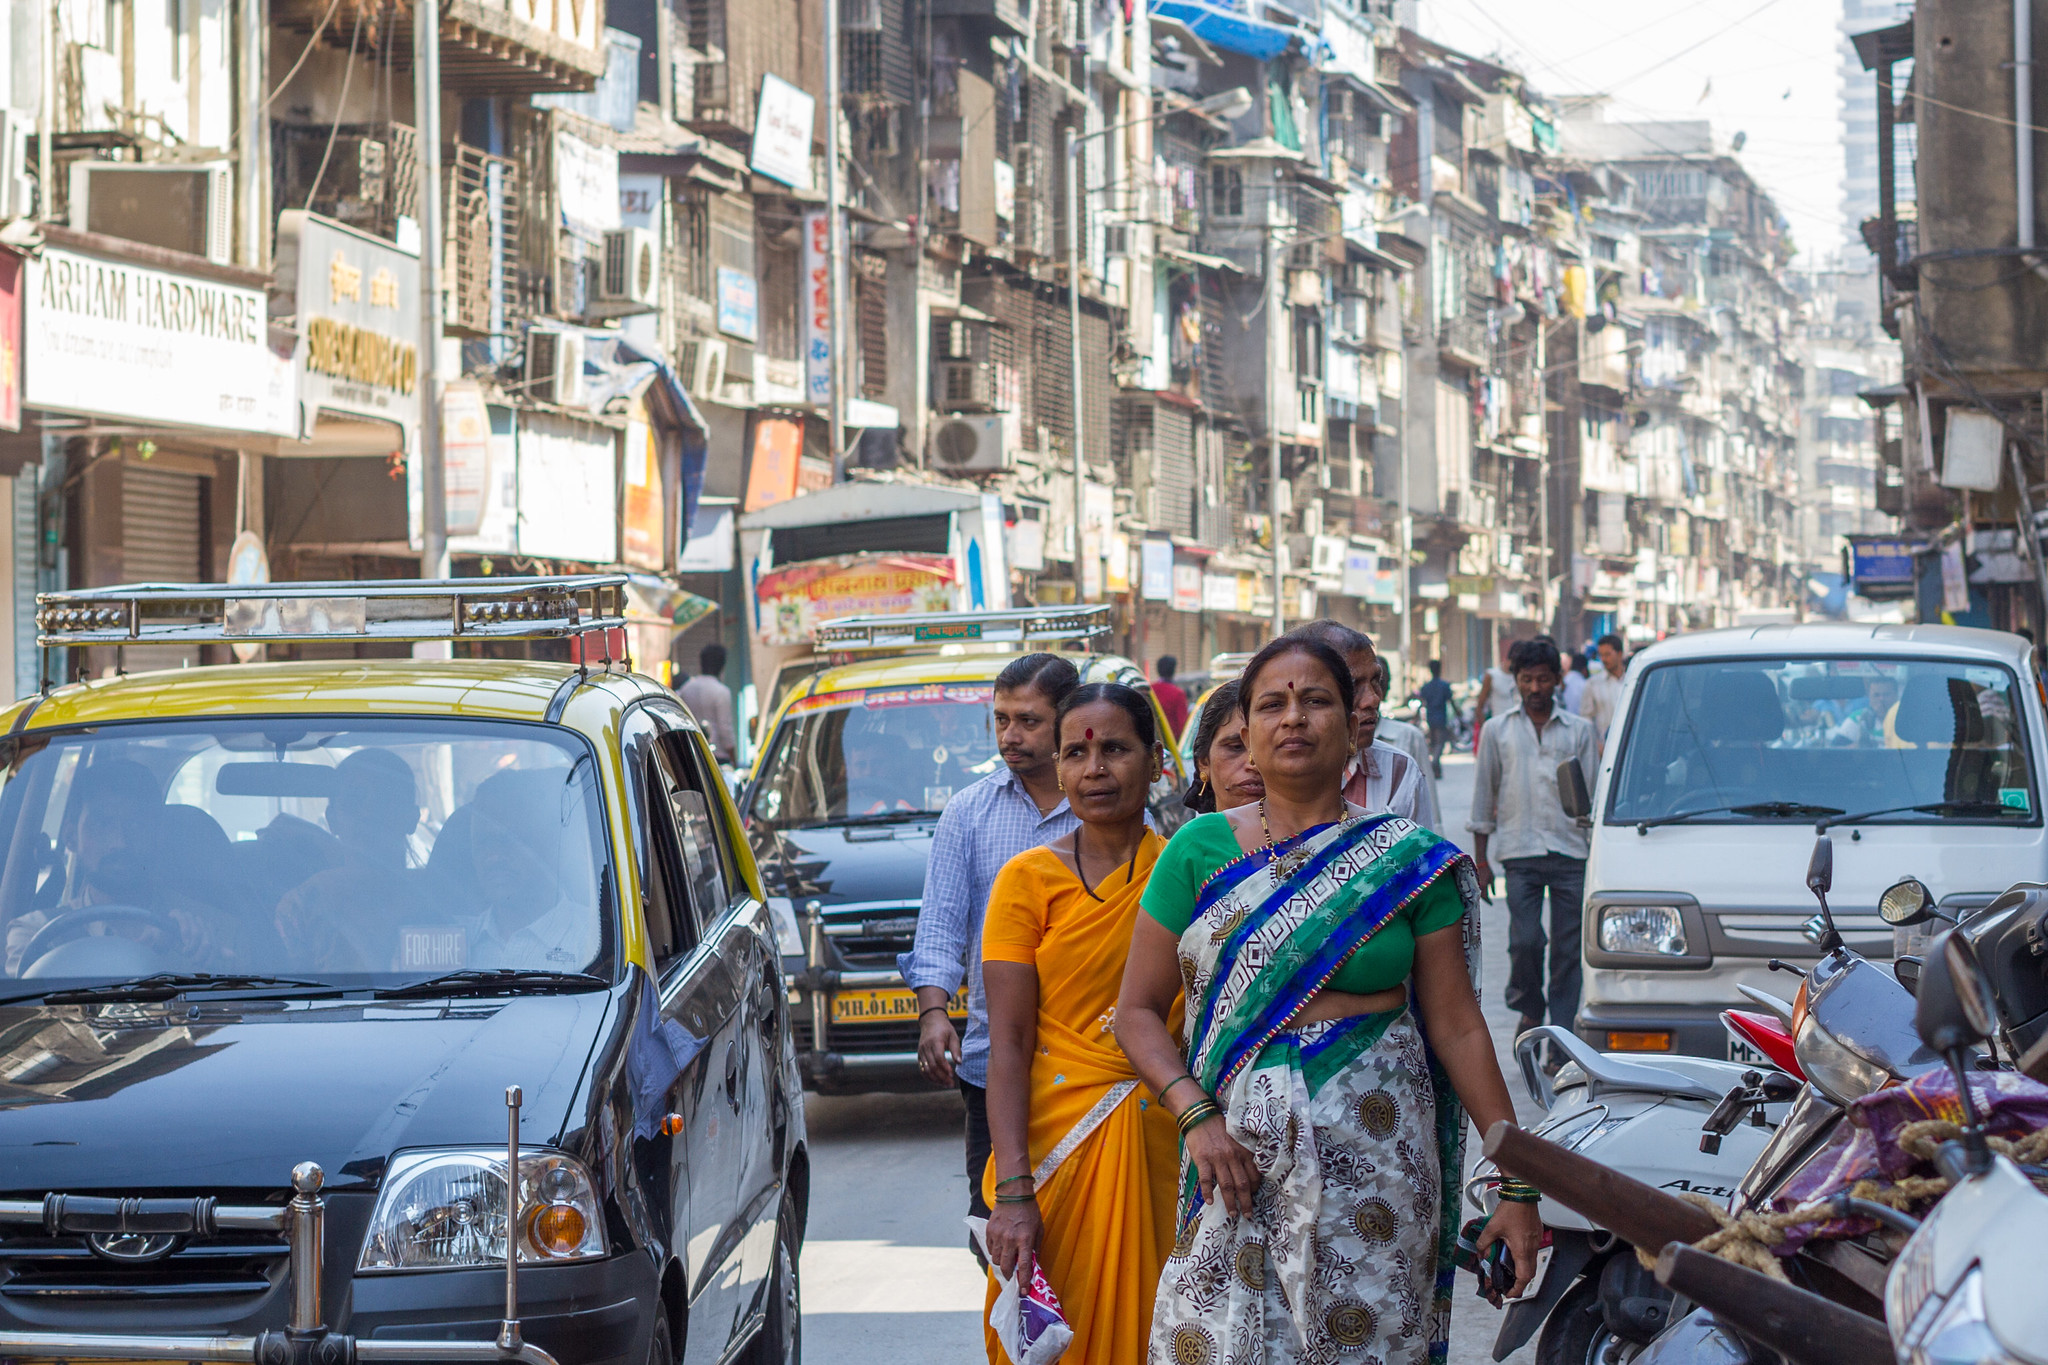 Women walking on a busy street in India